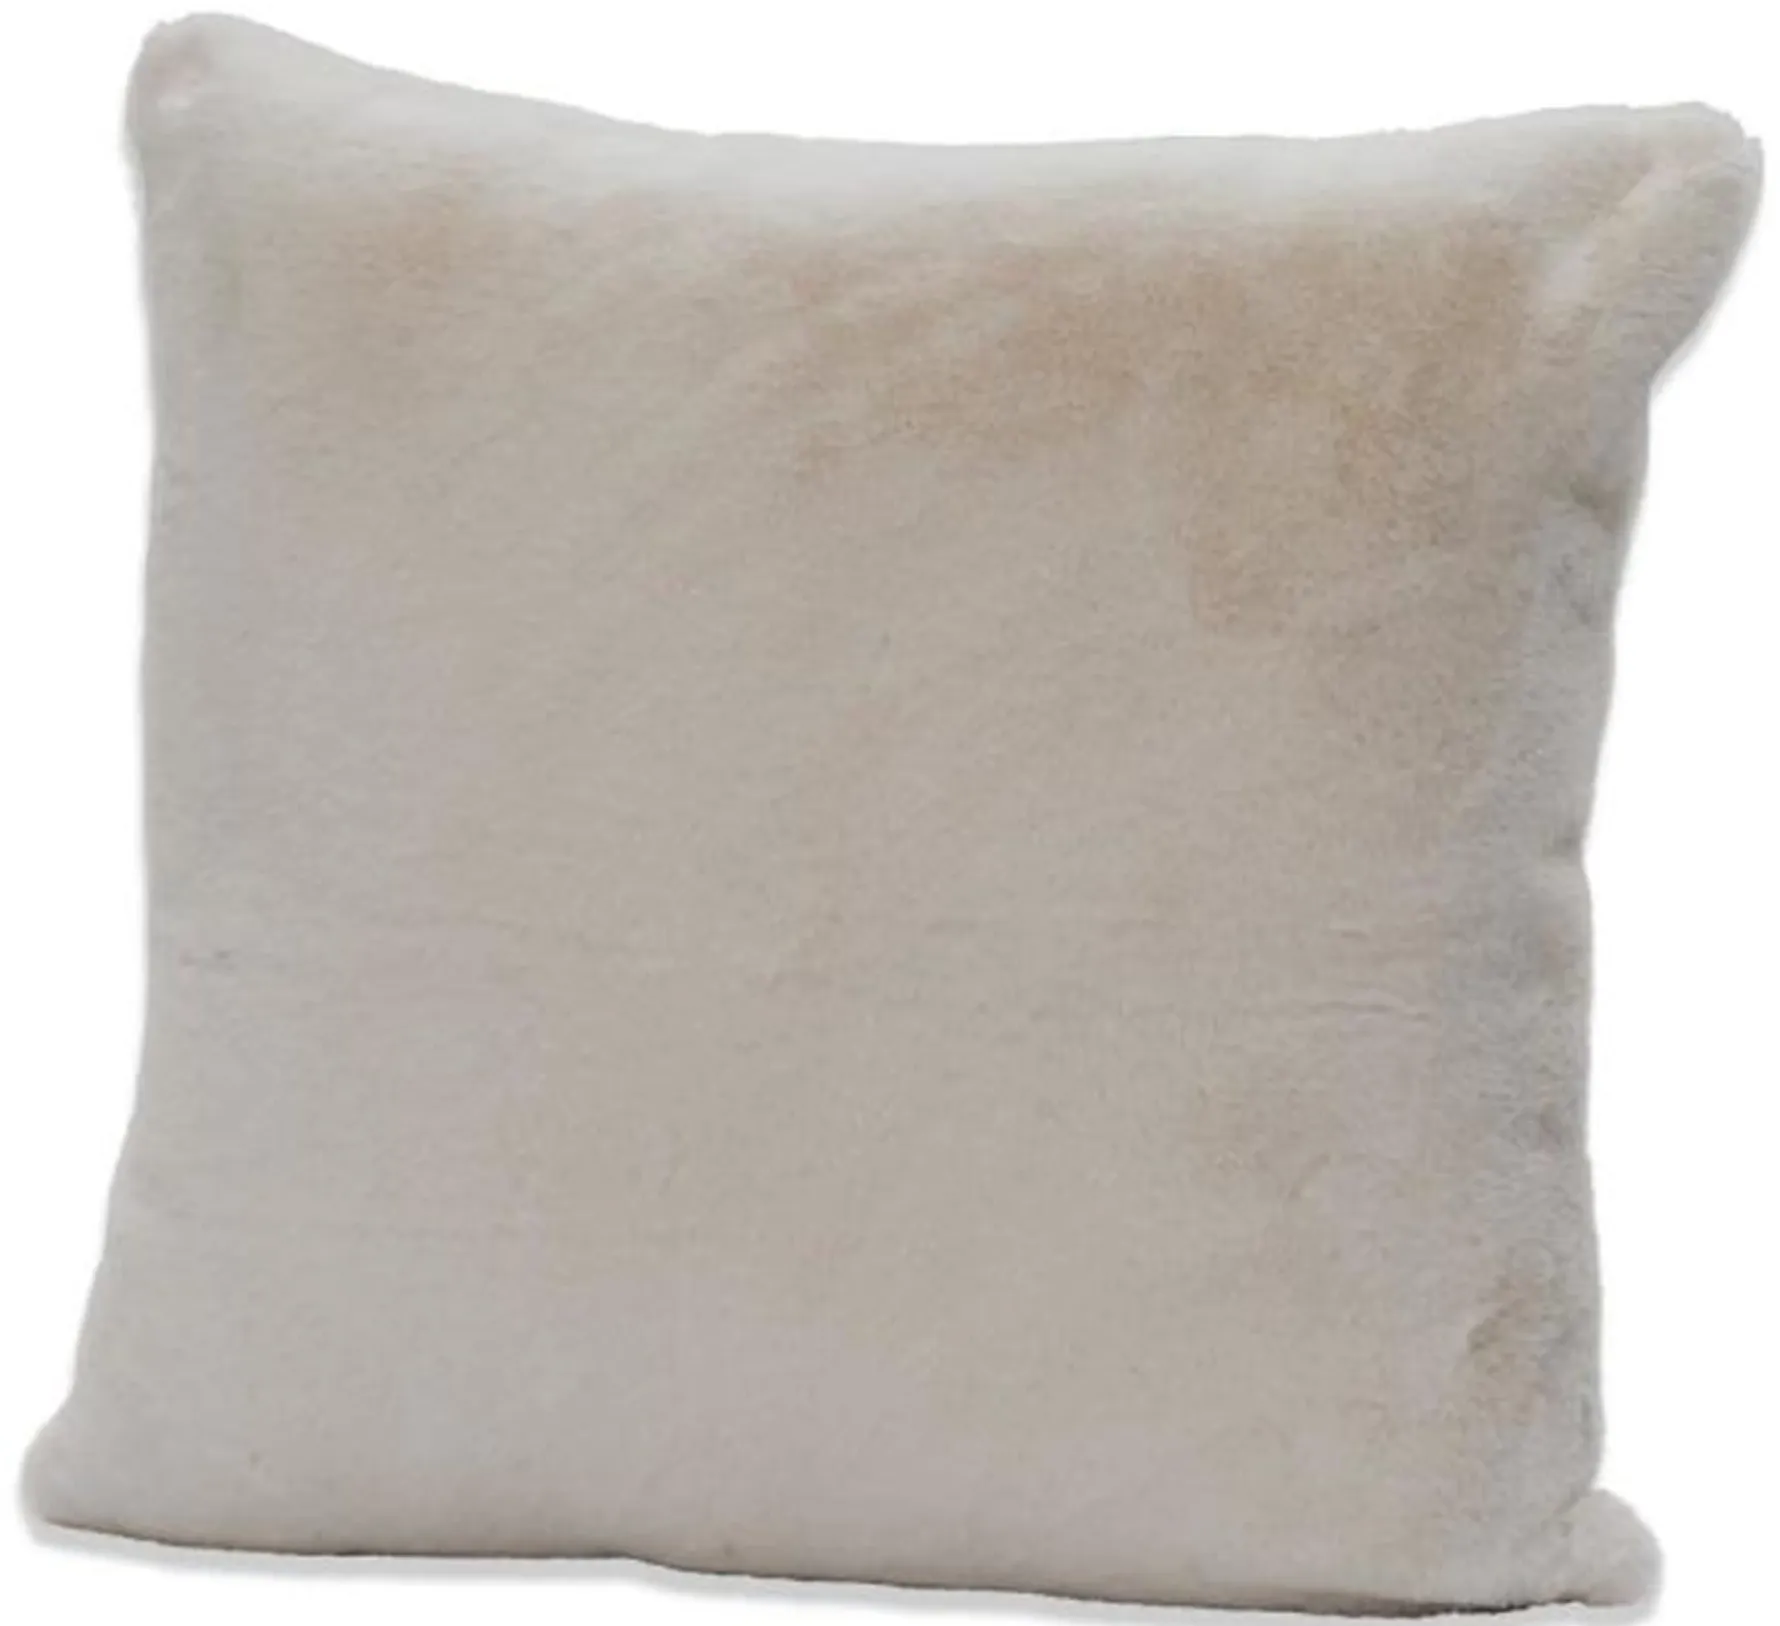 White Faux Rabbit Fur Pillow 20"W x 20"H